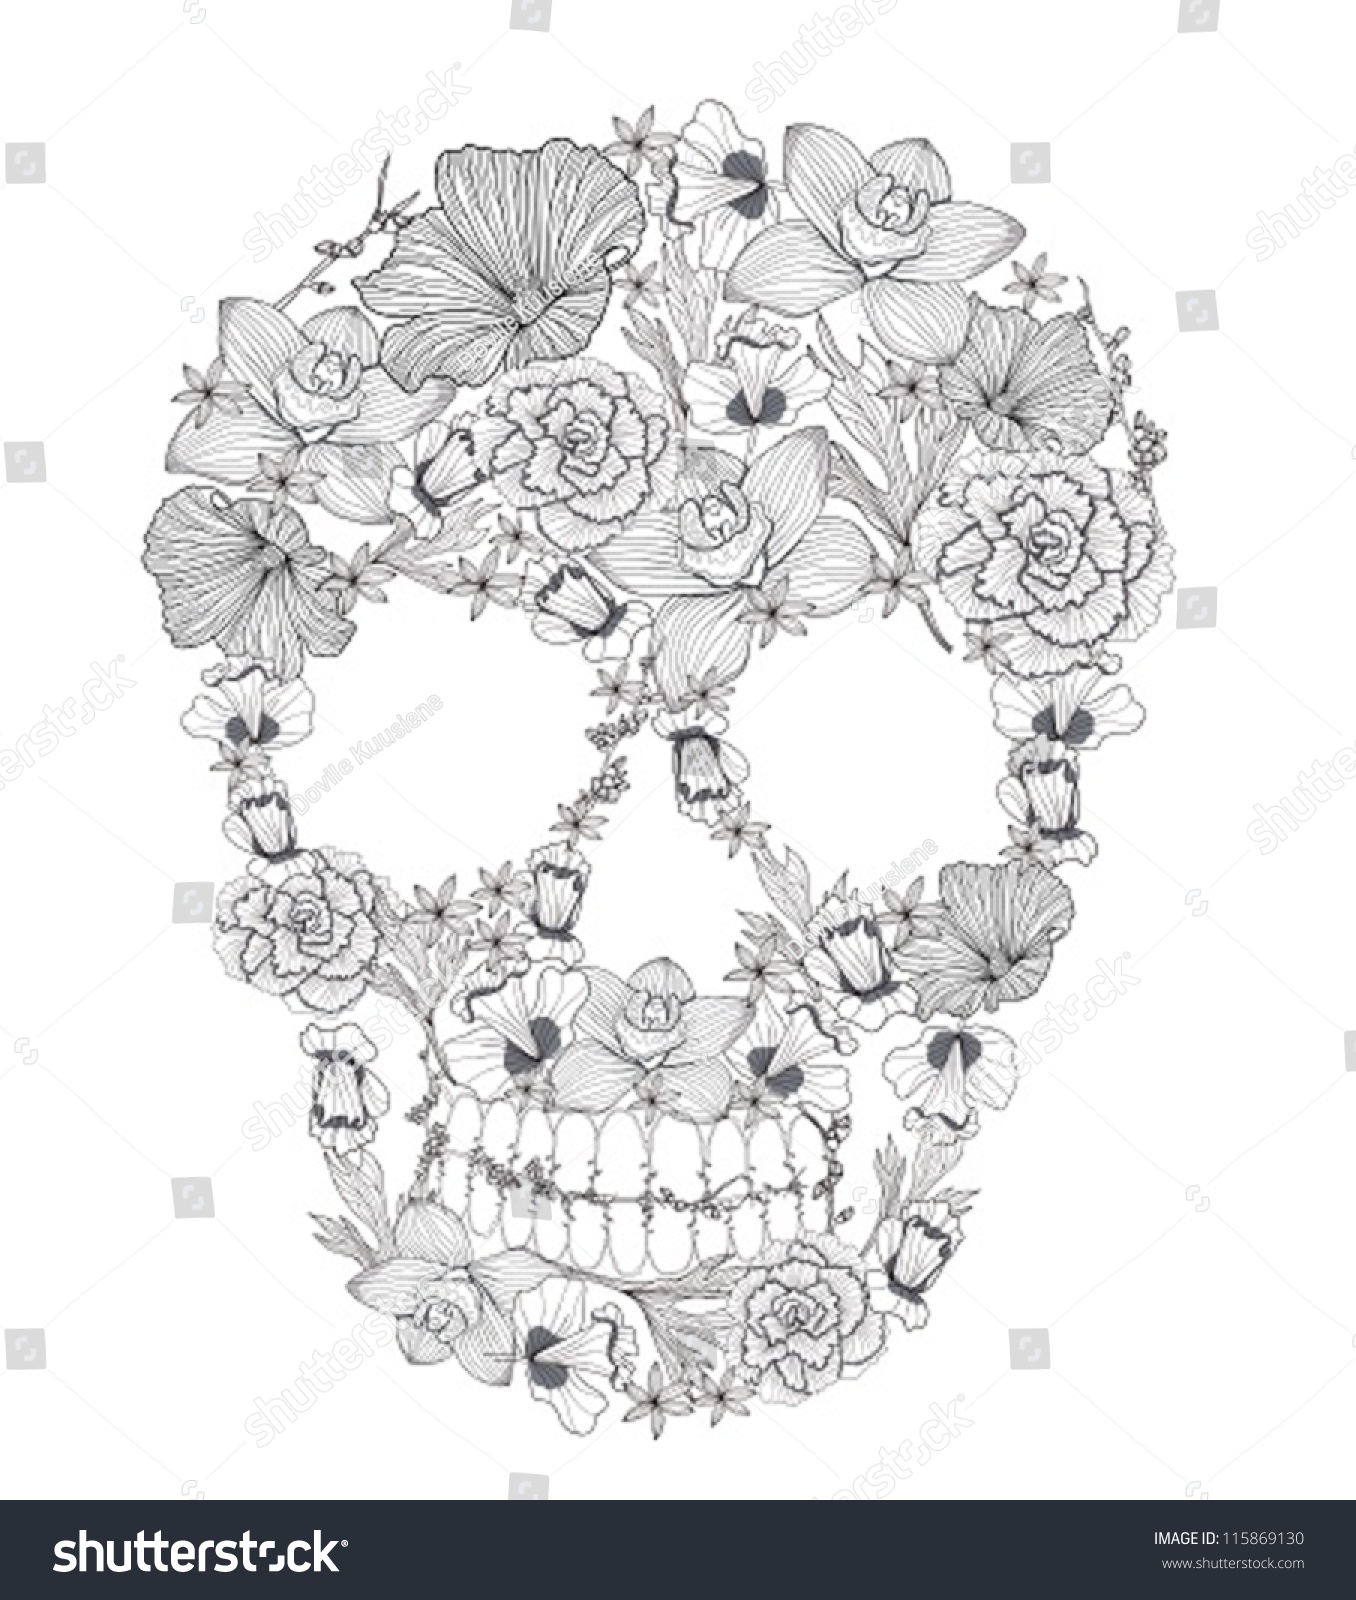 Skull From Flowers Stock Vector Illustration 115869130 : Shutterstock